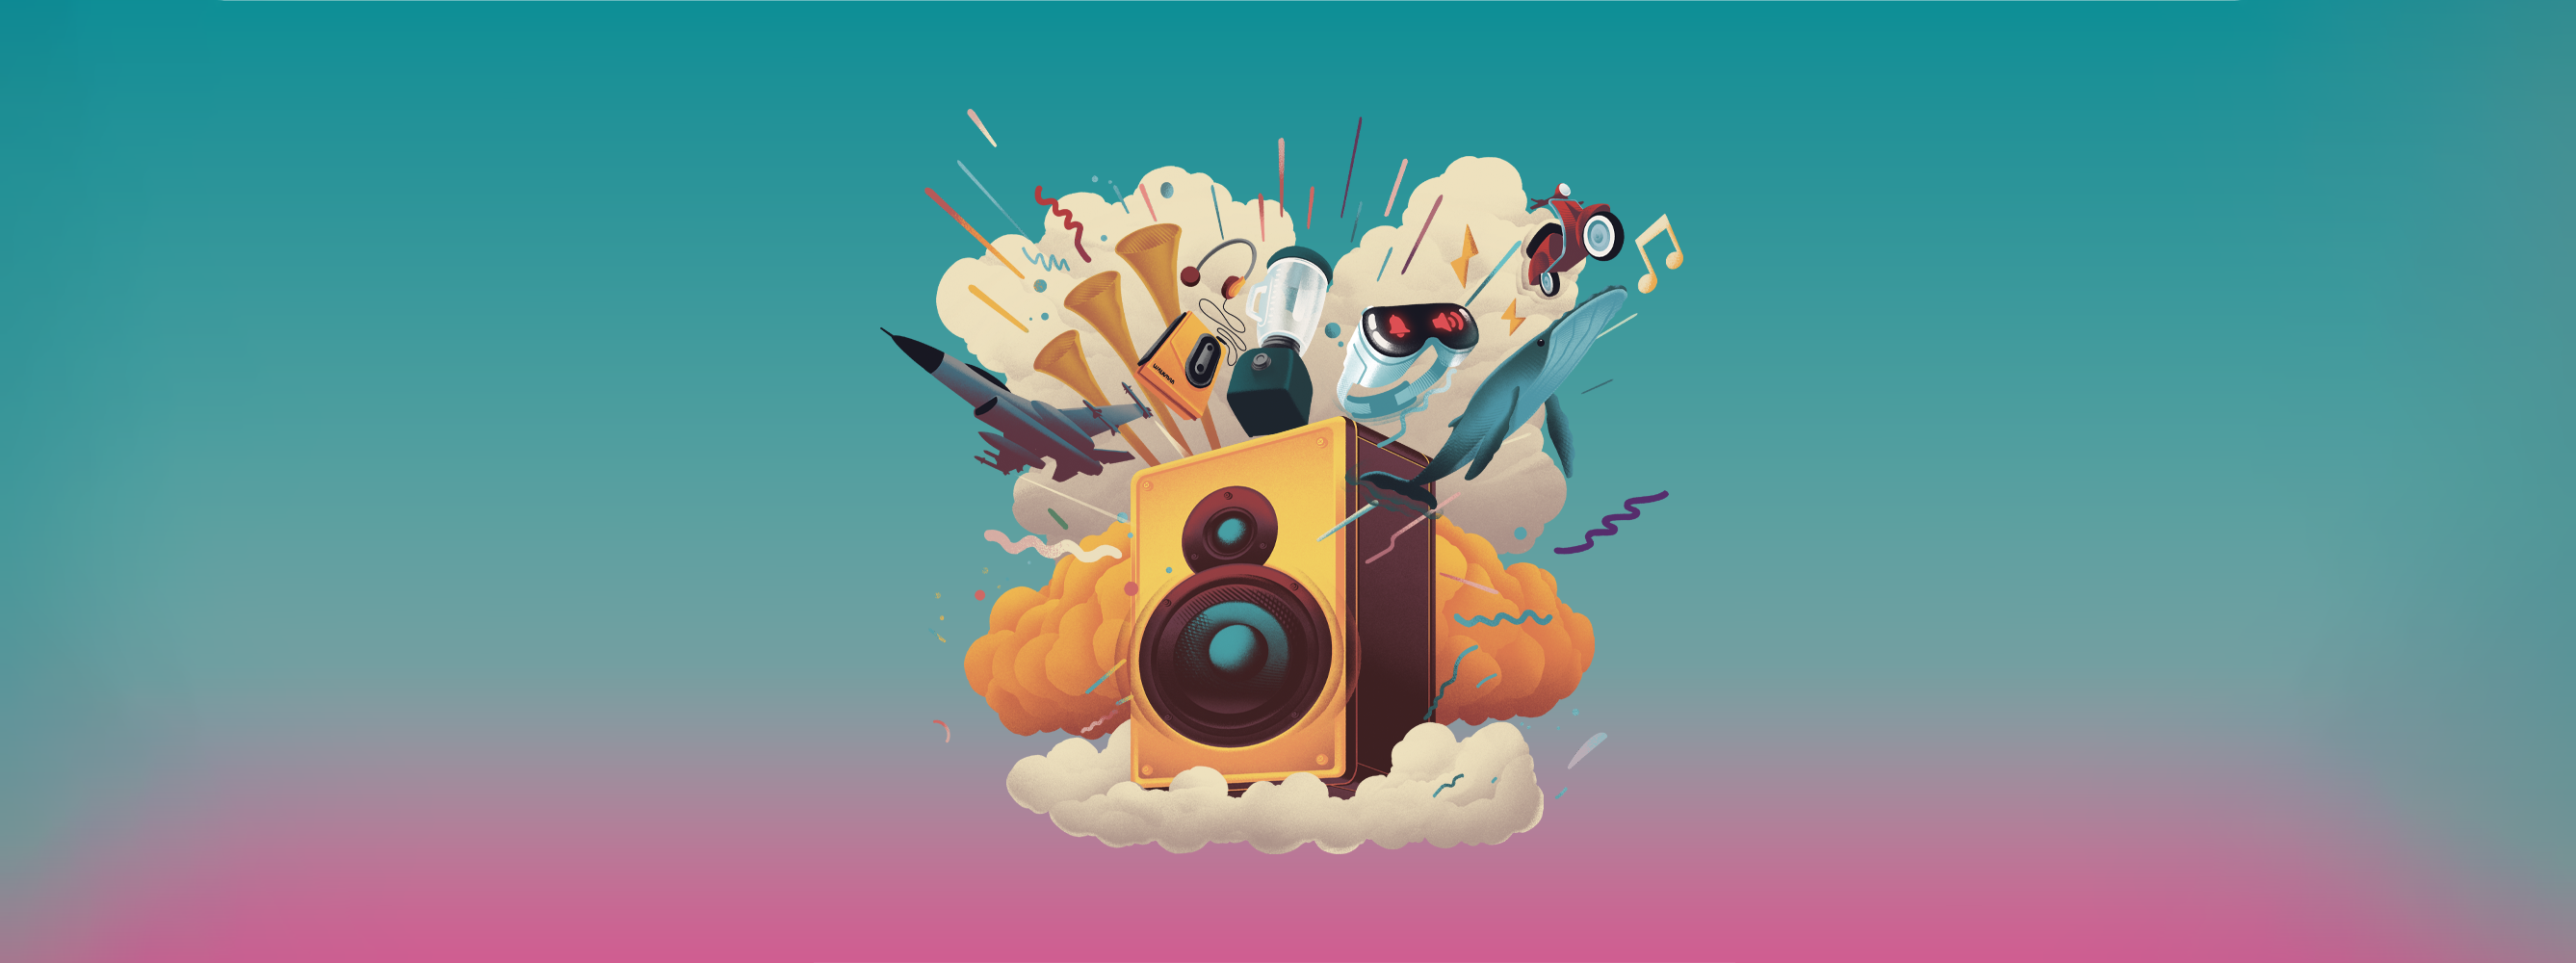 Cover du podcast INFRA : une enceinte posée sur un nuage d'où partent de nombreux objets produisant du bruit, comme dans une explosion festive © Kévin Deneufchatel, Futura